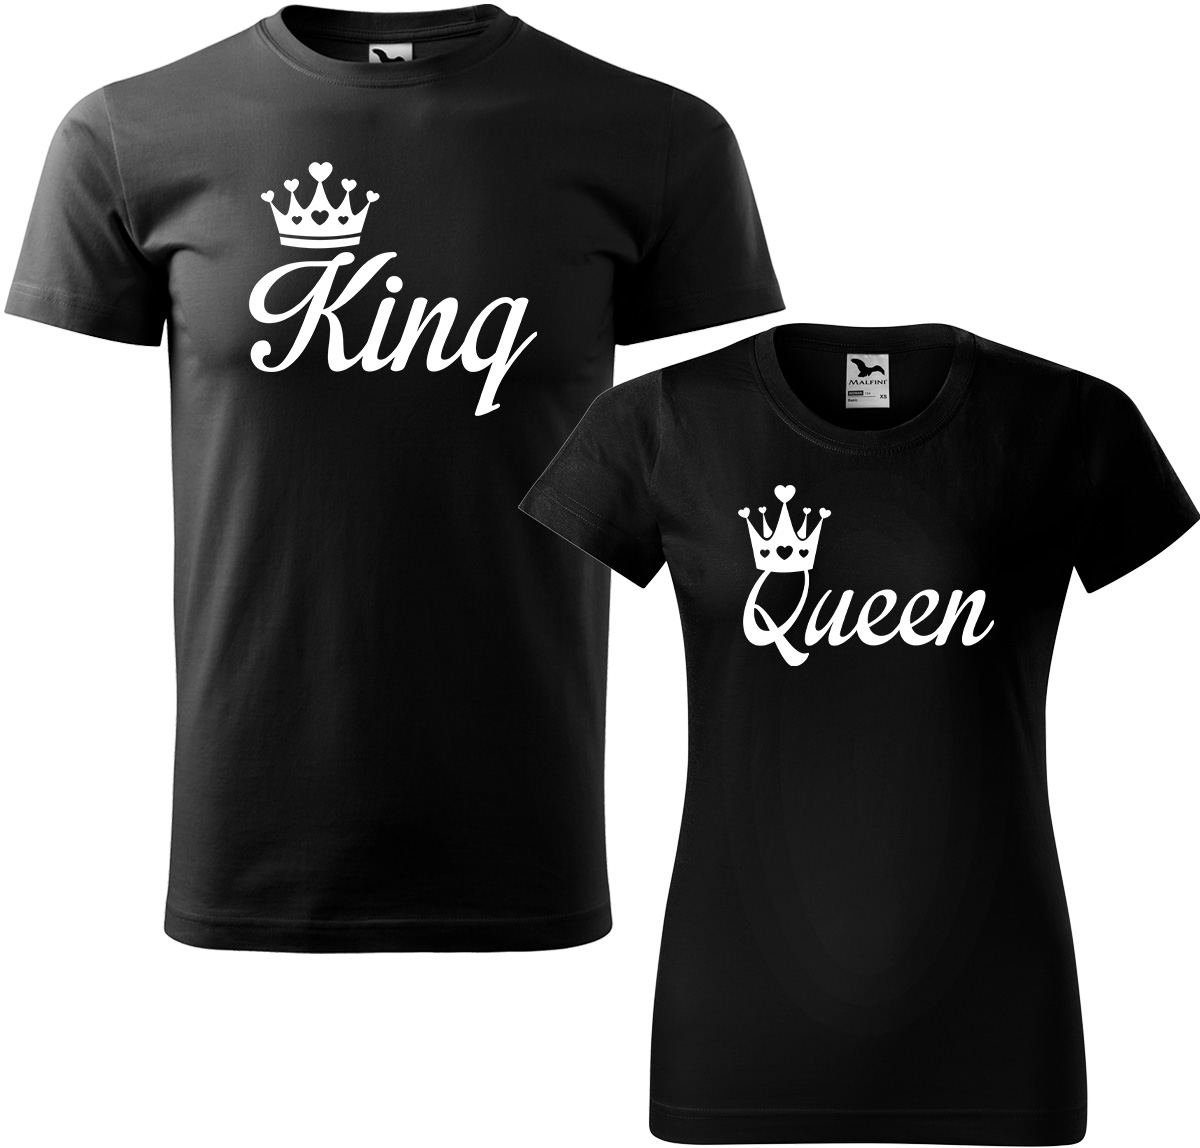 Trička pro páry - King a queen Barva: Černá (01), Velikost dámské tričko: XL, Velikost pánské tričko: XL